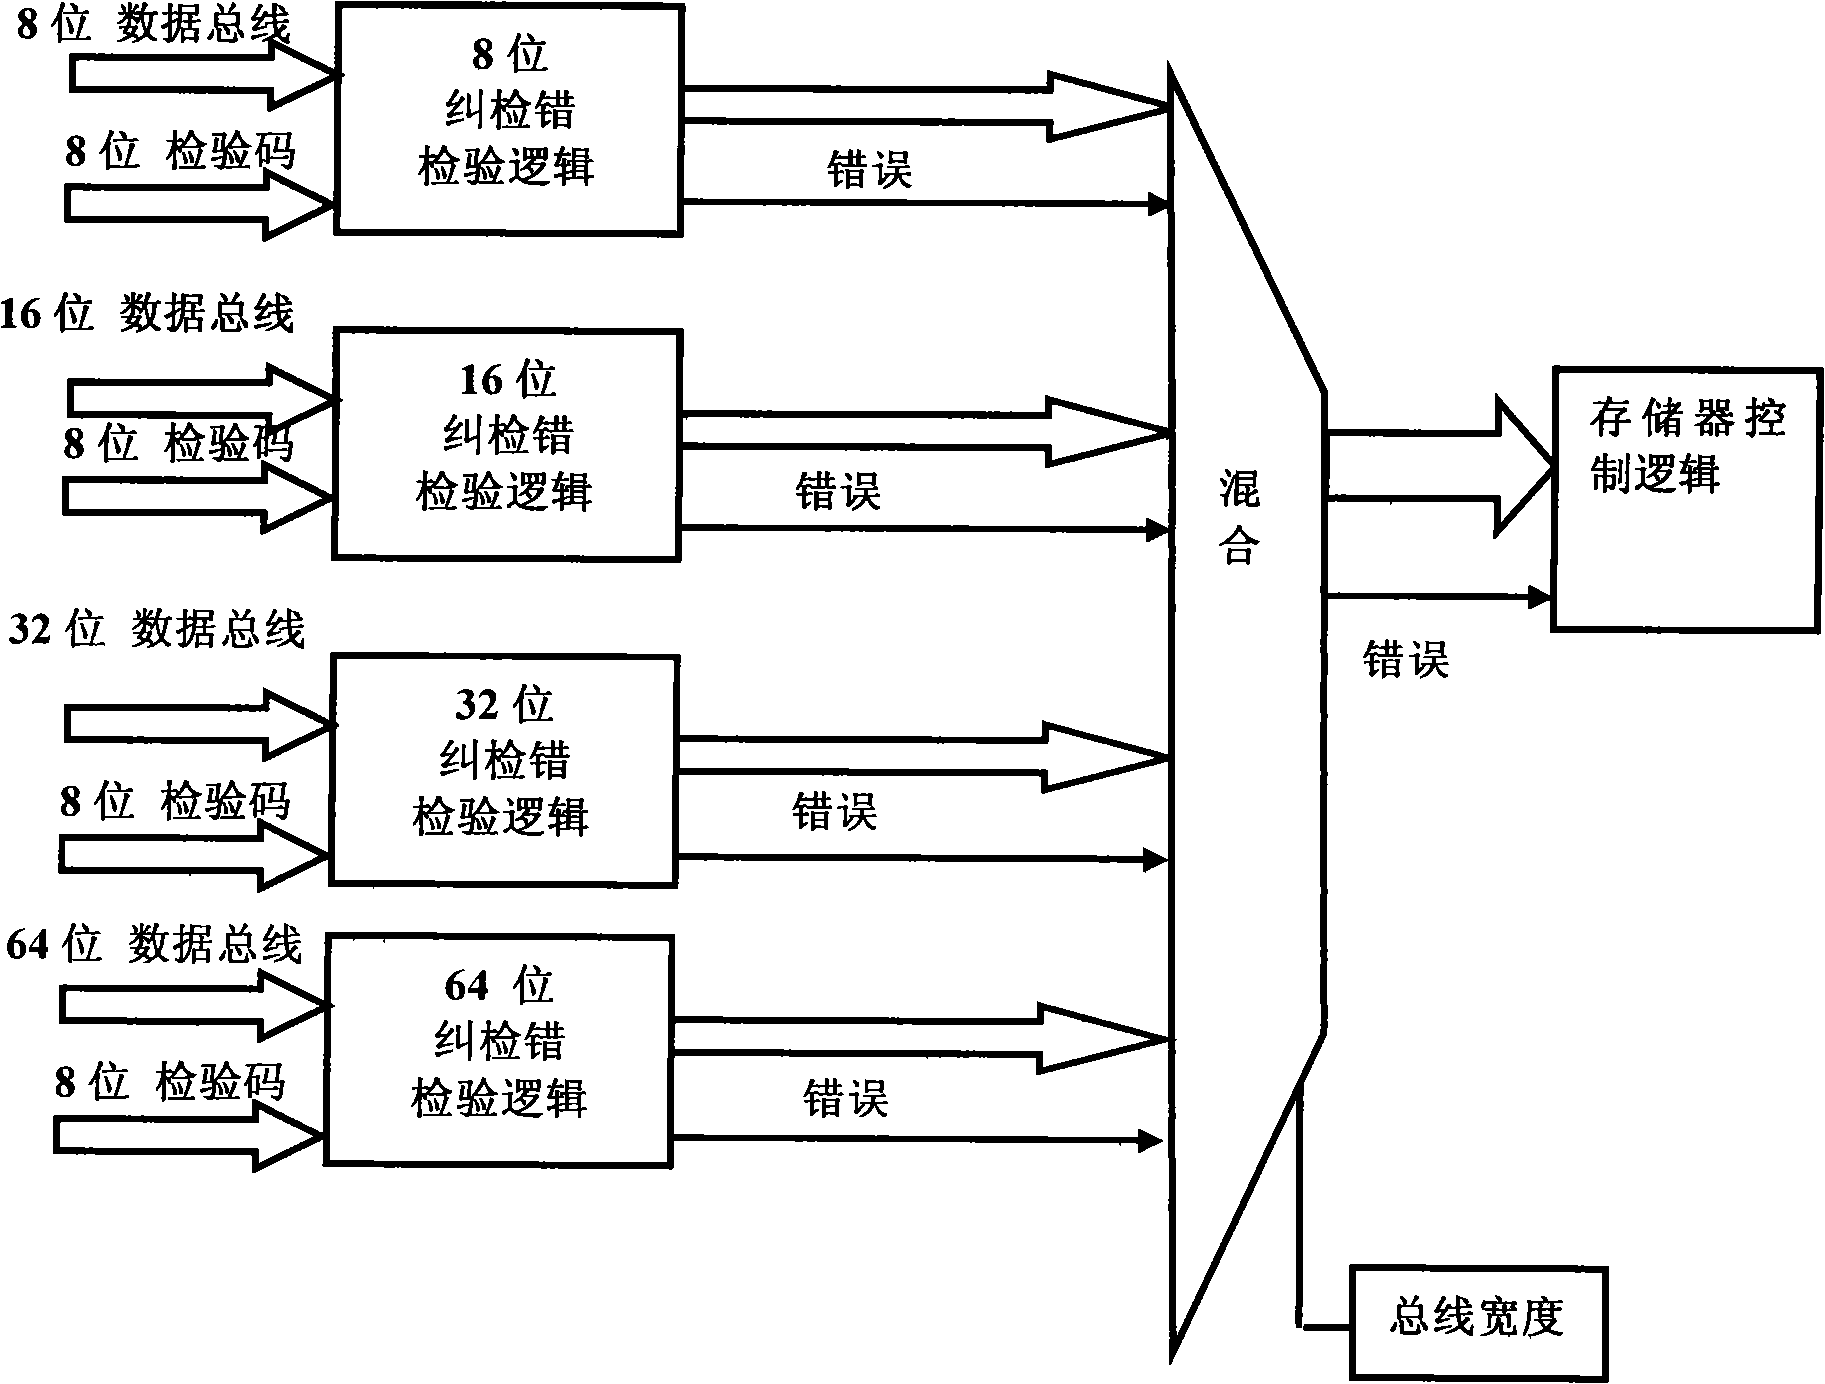 Method for restoring star load computer hardware scanning error